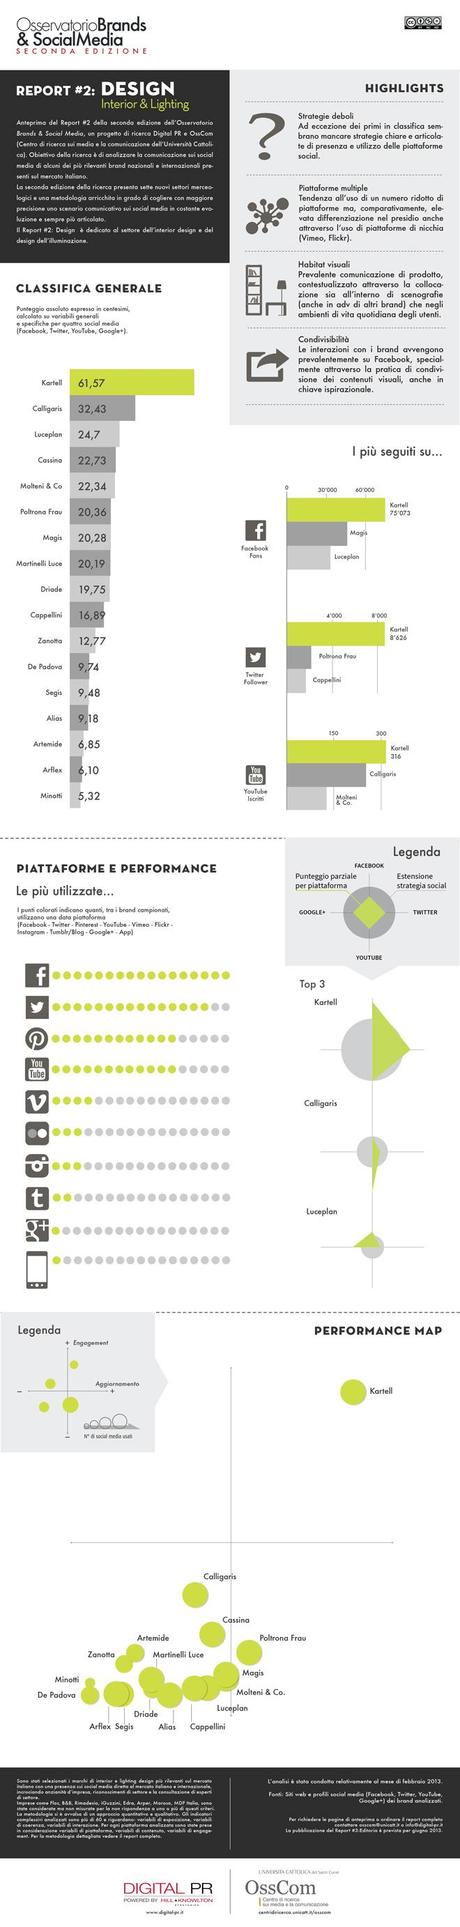 Brands & Social Media, analisi del settore Design [Infografica]